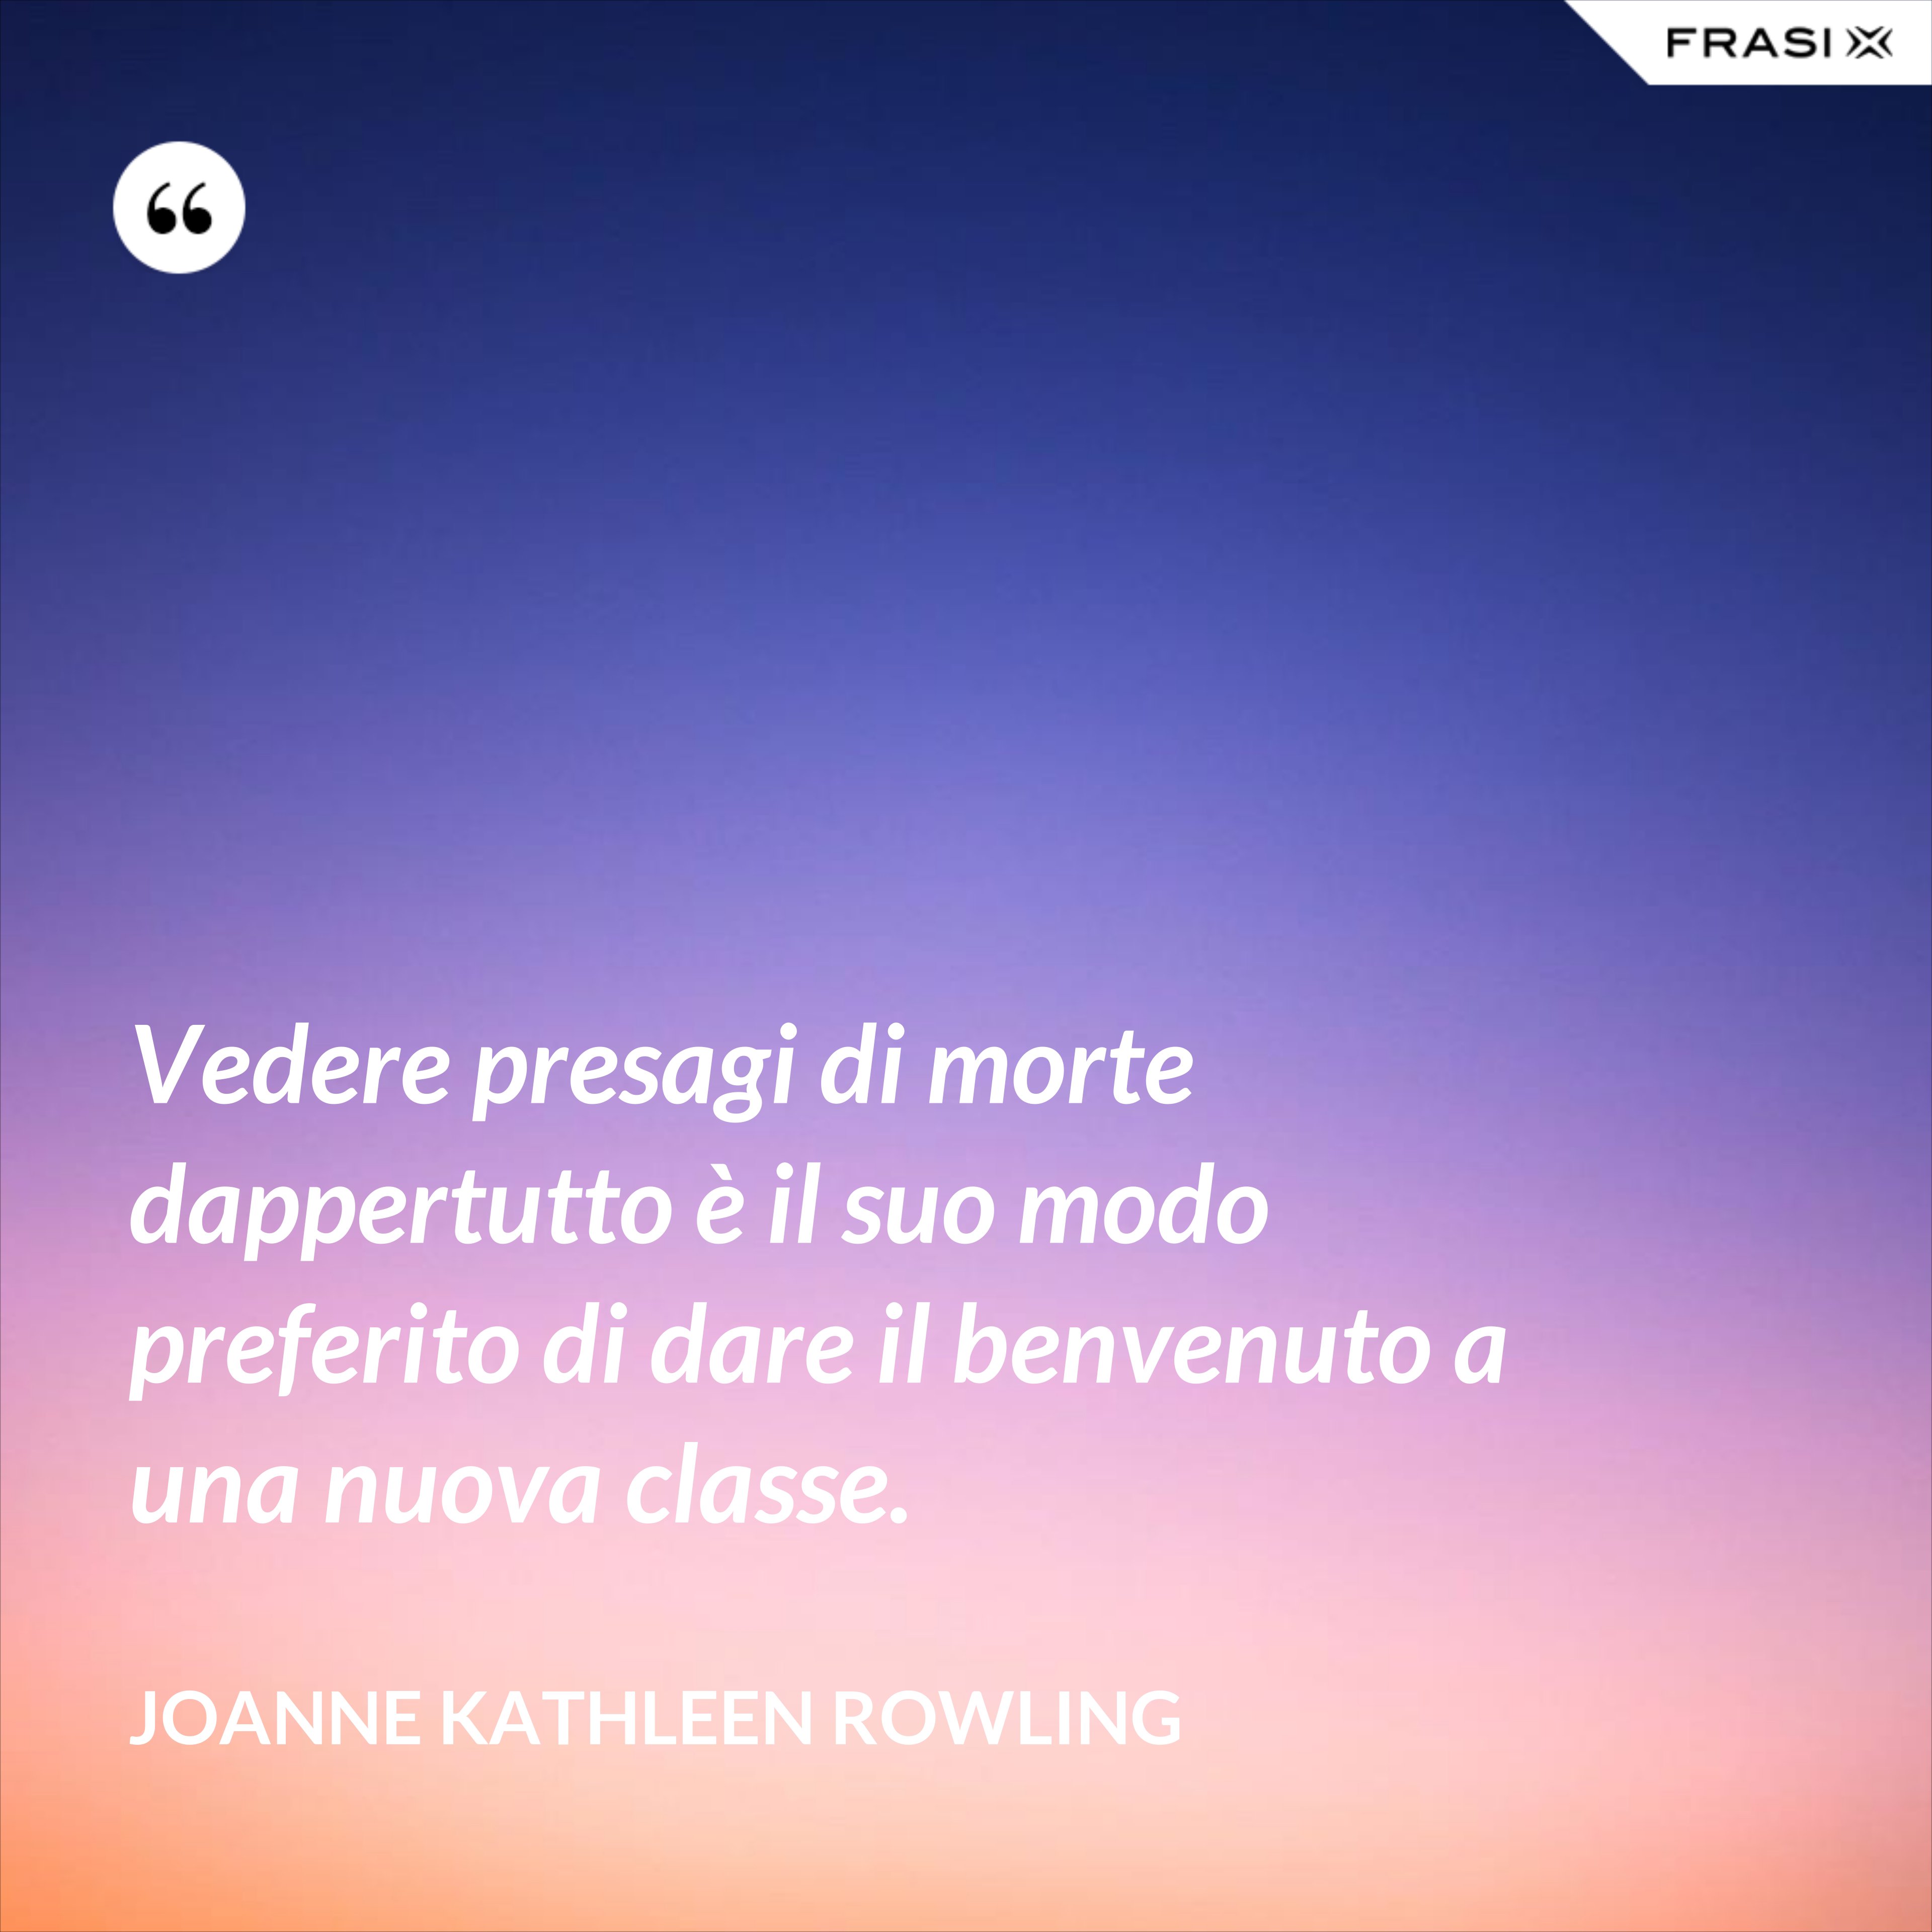 Vedere presagi di morte dappertutto è il suo modo preferito di dare il benvenuto a una nuova classe. - Joanne Kathleen Rowling